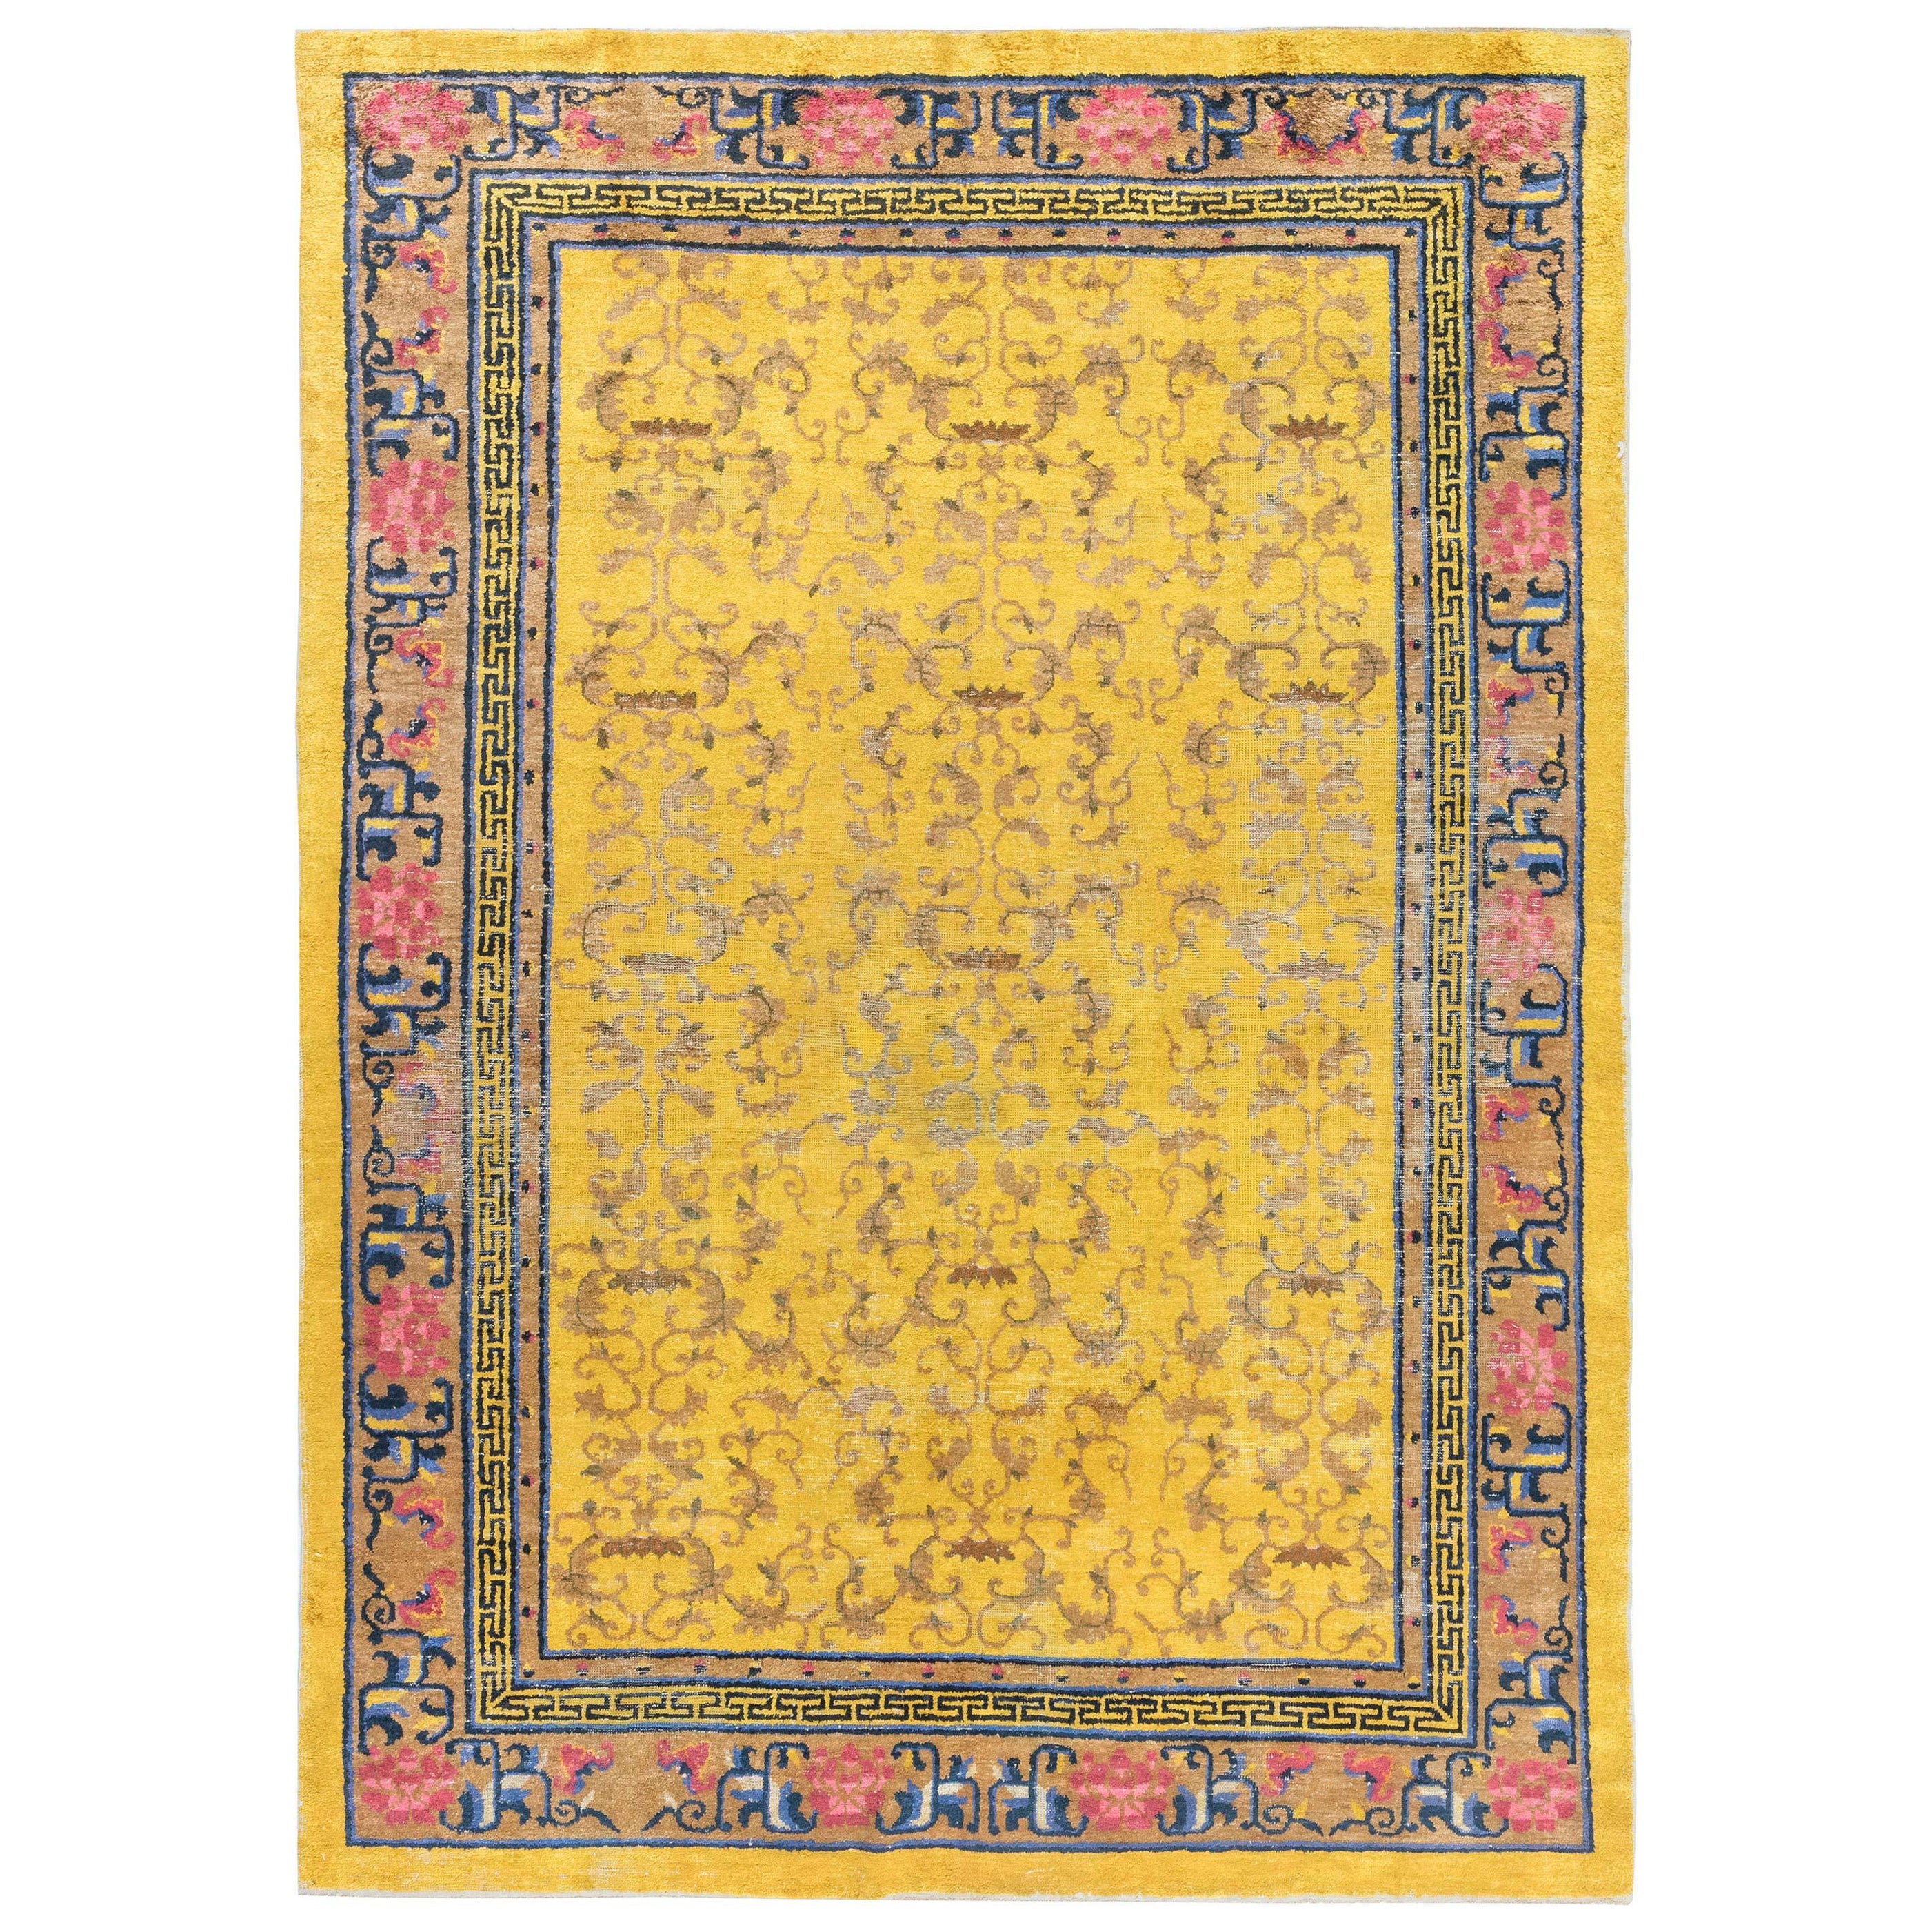 Early 20th Century Chinese Yellow Handmade Silk Rug